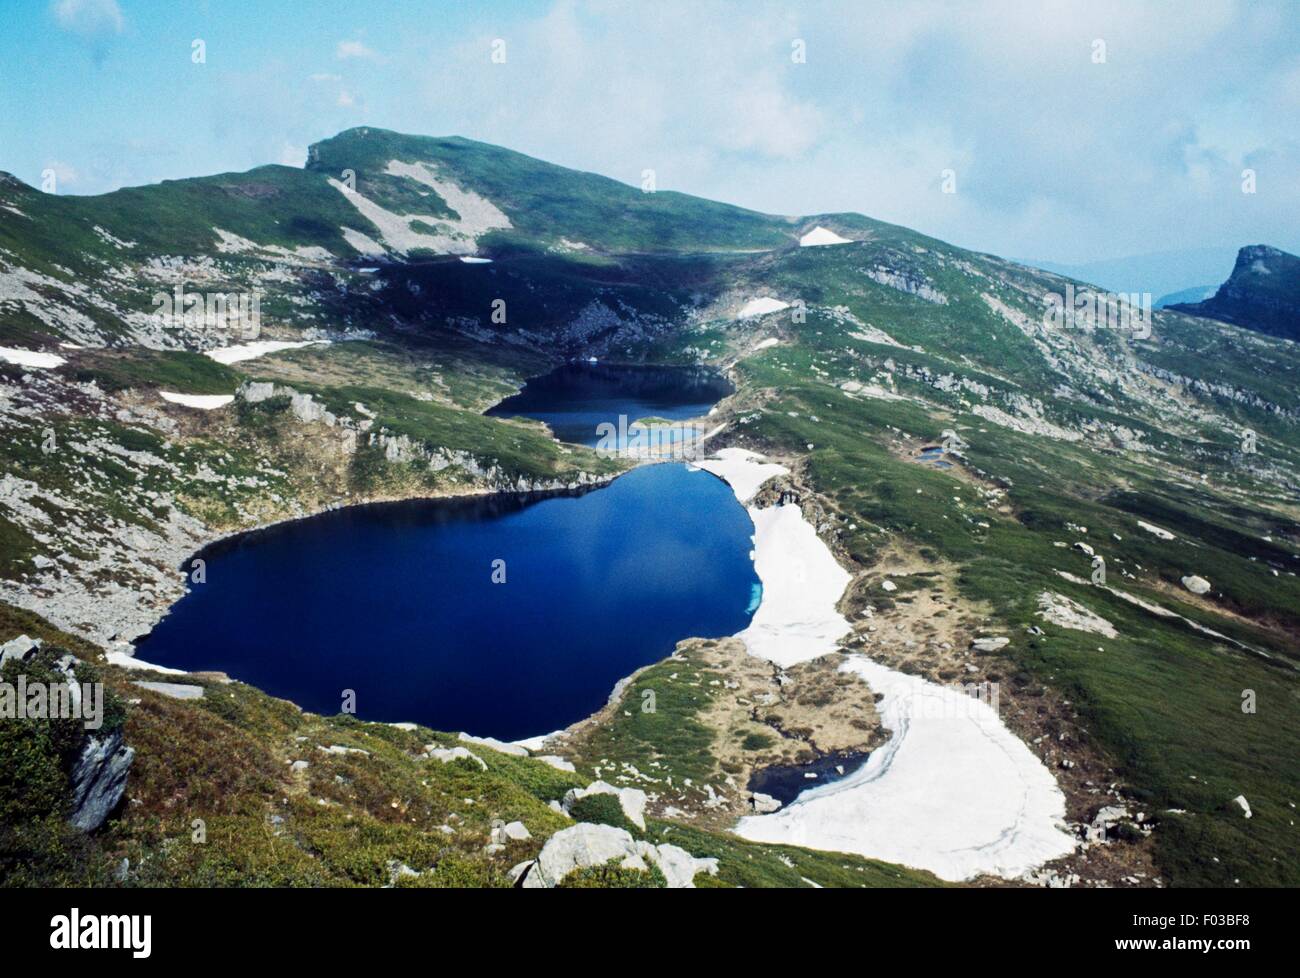 Lagos Sillara de Mt. Sillara, lagos glaciales, los Apeninos de Parma,  Emilia-Romaña, Italia Fotografía de stock - Alamy